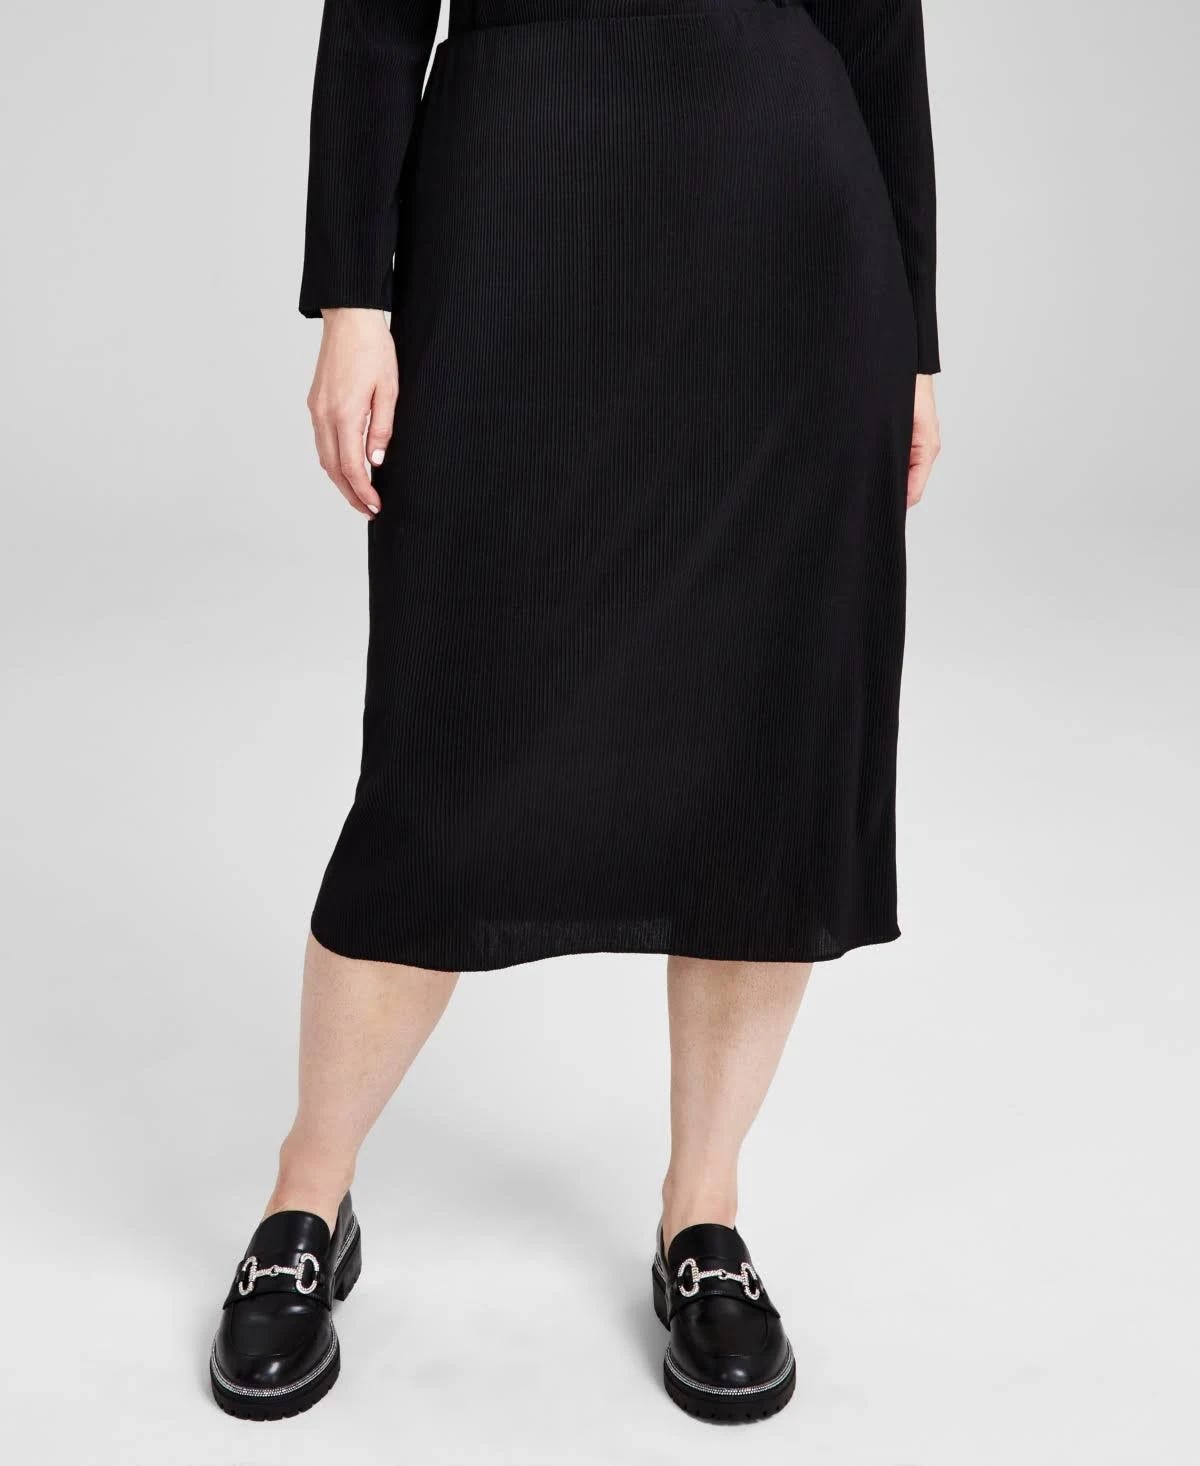 Comfortable and Stylish High-Waist Knit Midi Skirt | Image